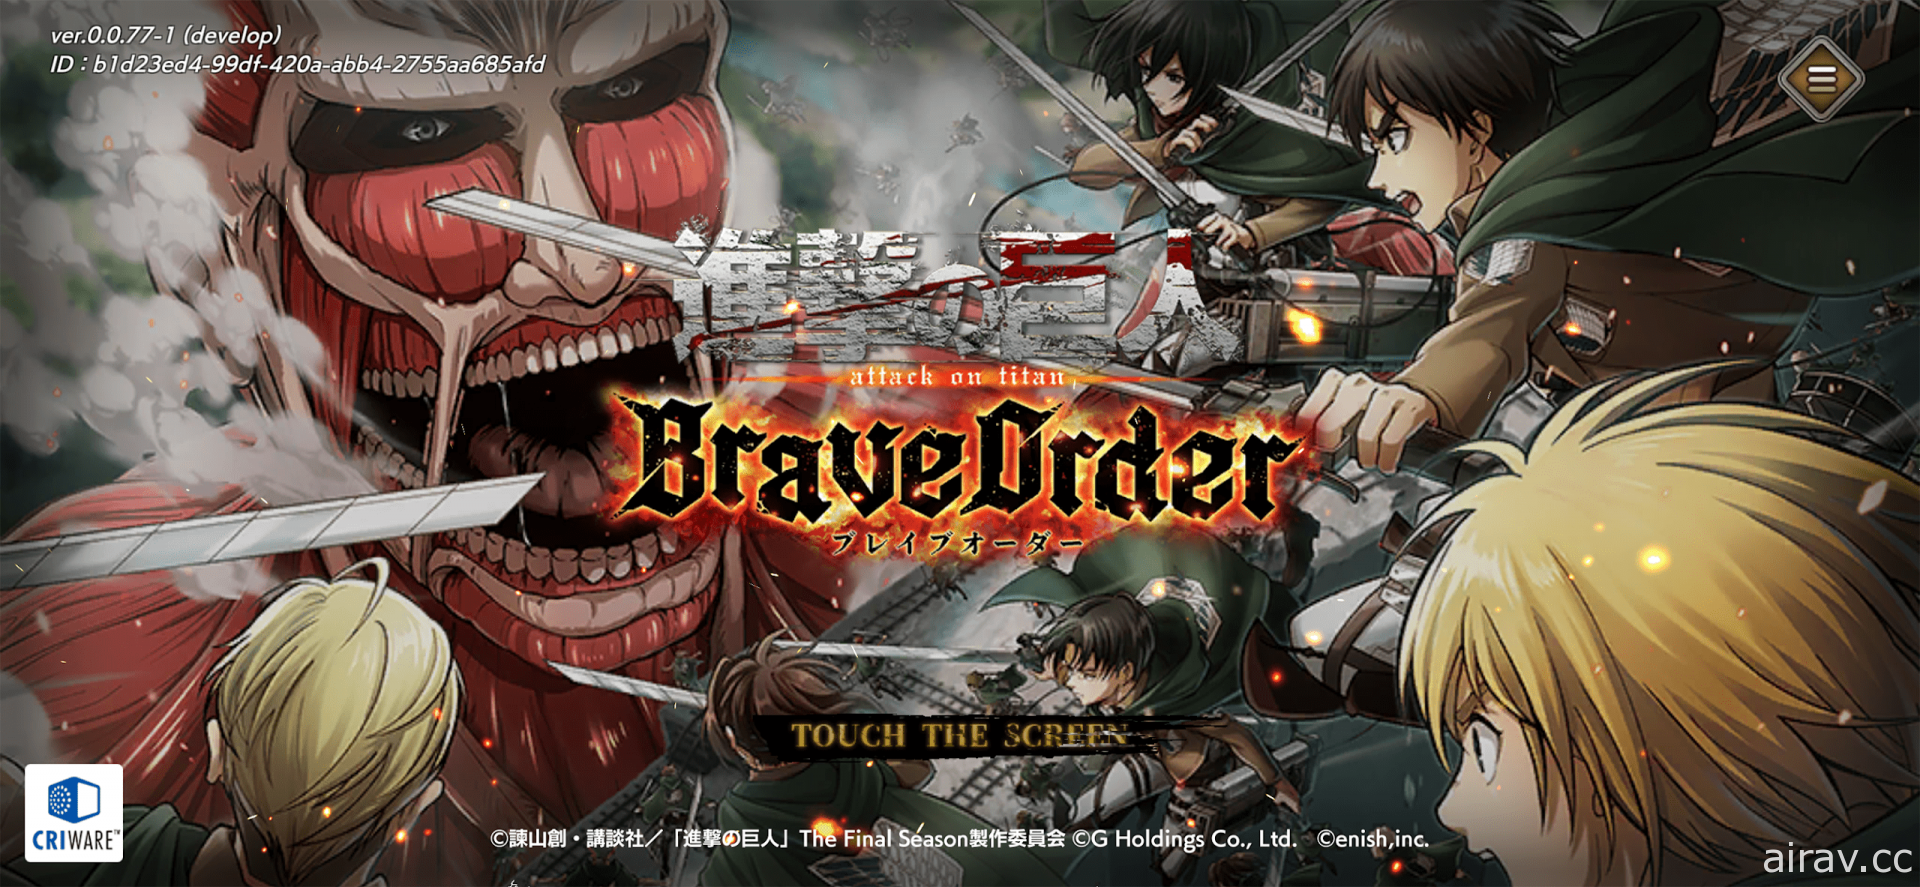 多人共斗型 RPG《进击的巨人 Brave Order》在日推出 与调查兵团协力讨伐巨人